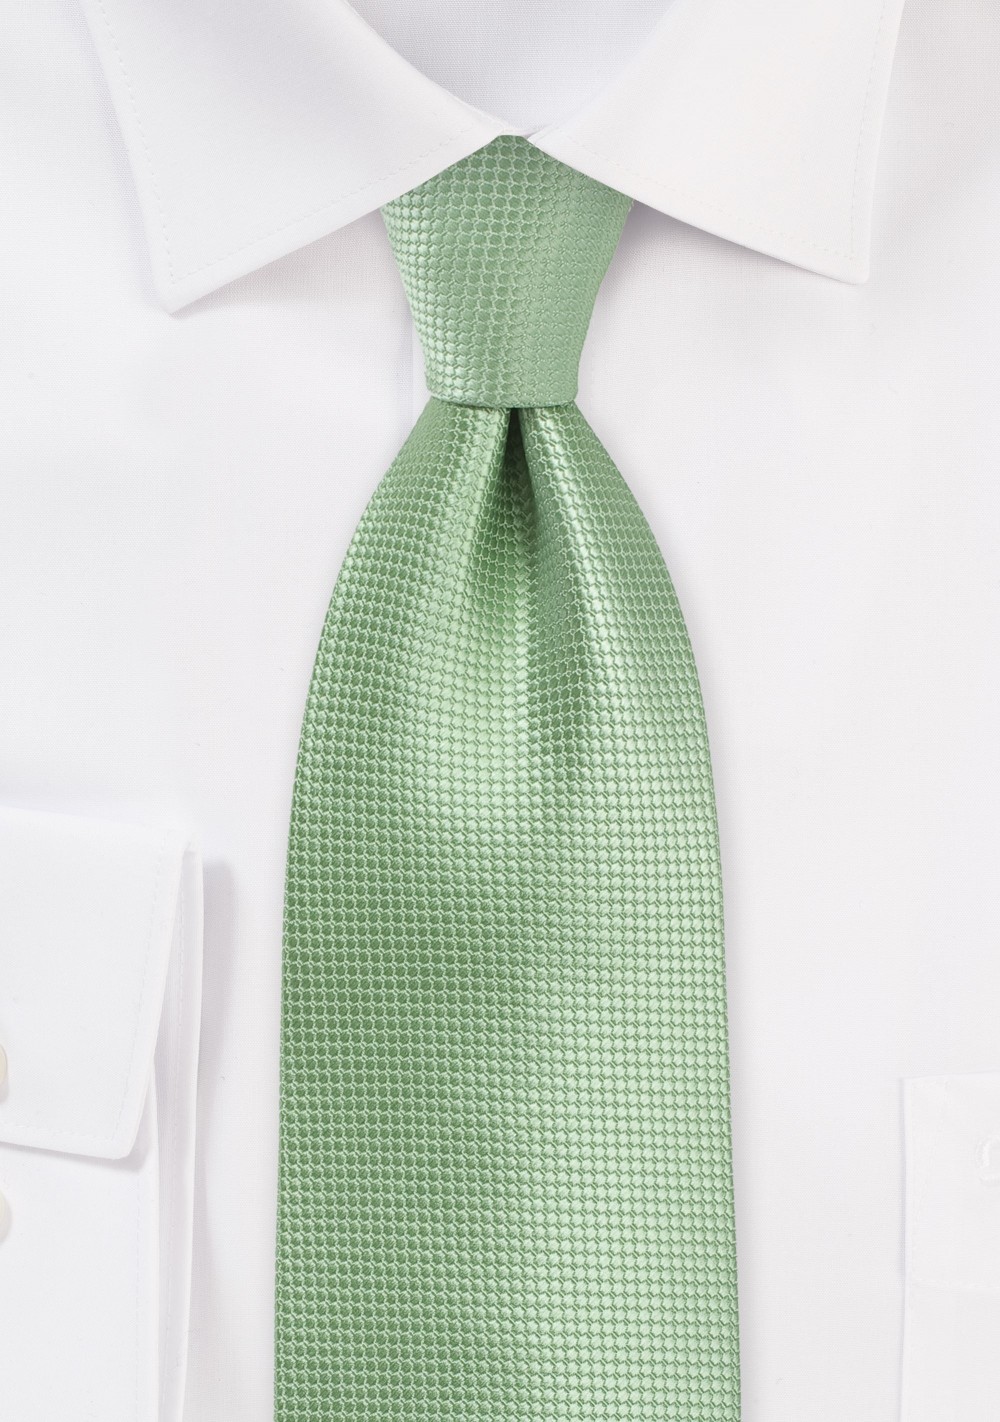 Solid Textured Tie in Laurel Green